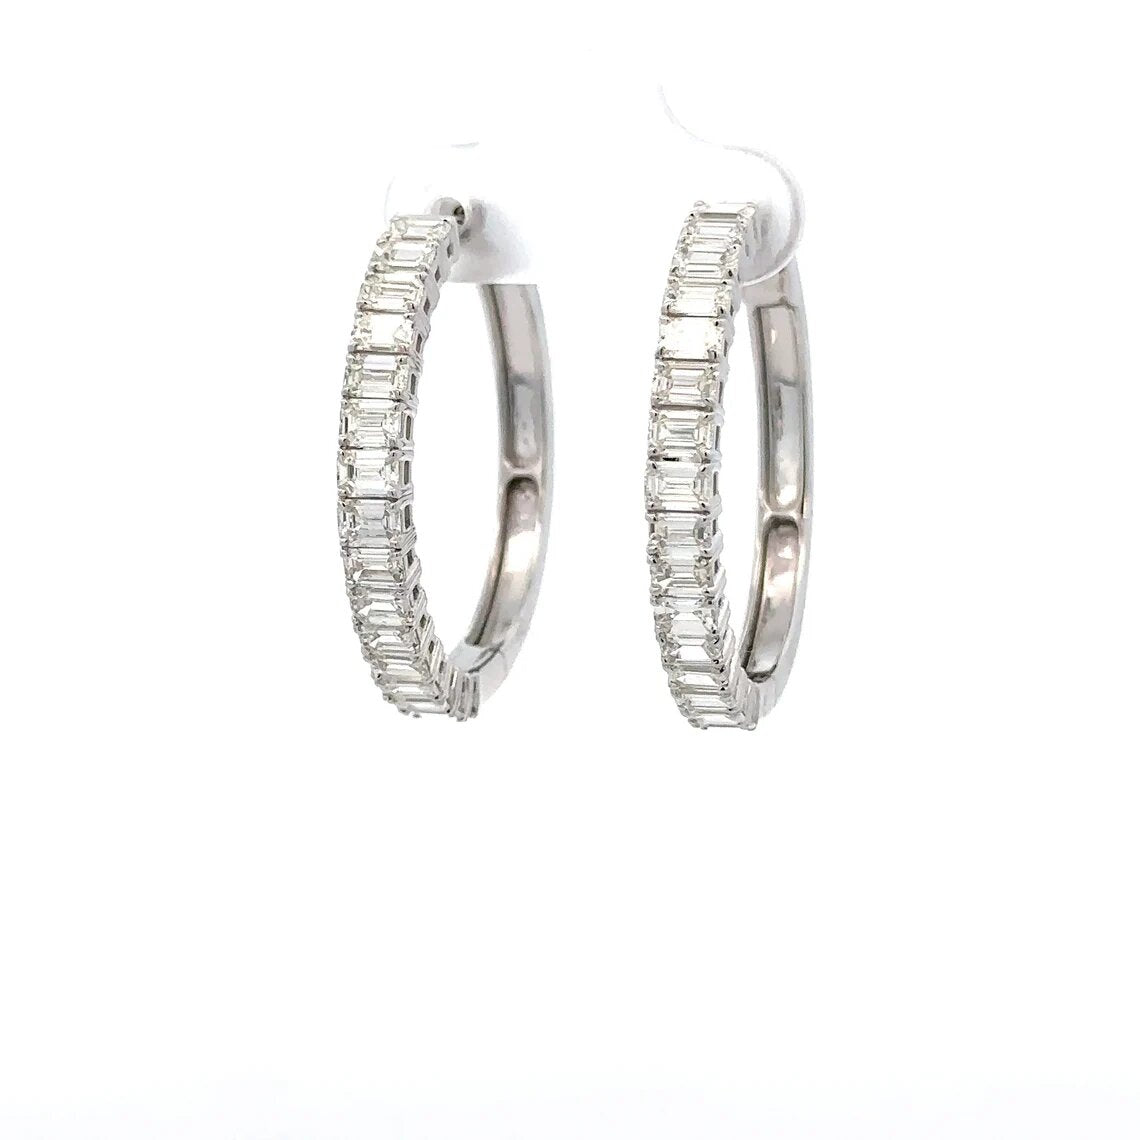 Unisex Emerald Cut Diamond Earrings in 14K White Gold